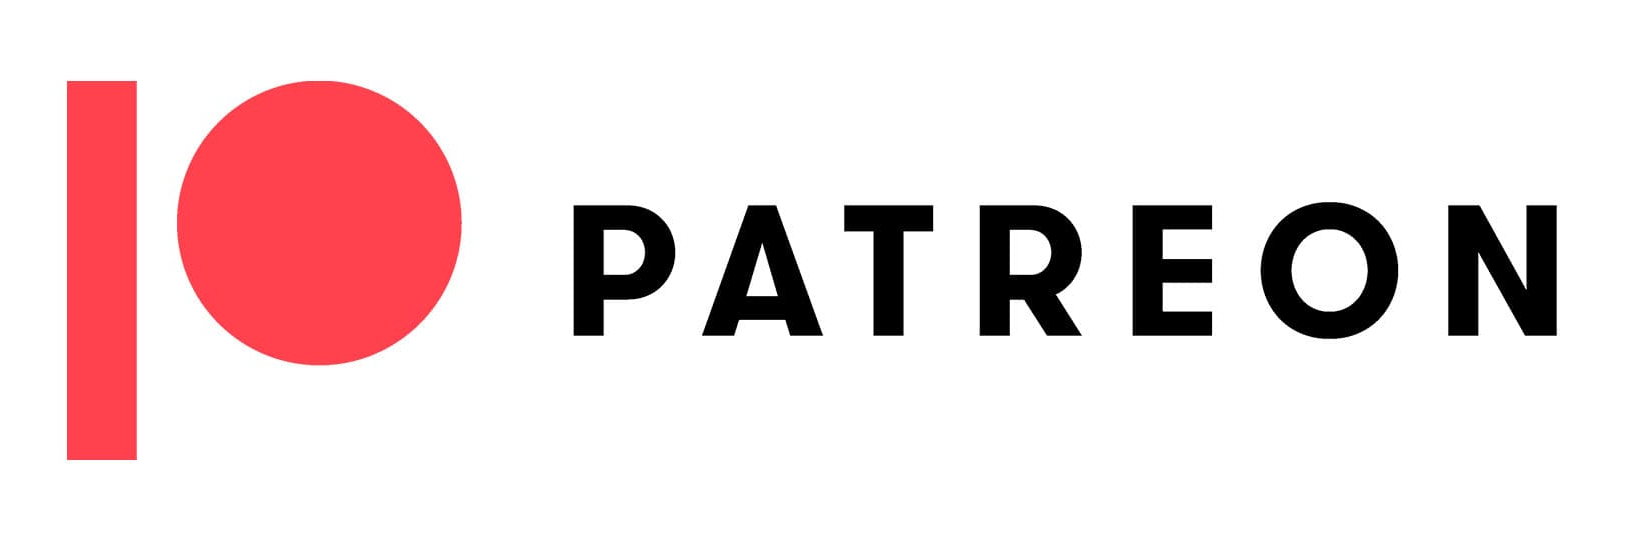 patreon_color